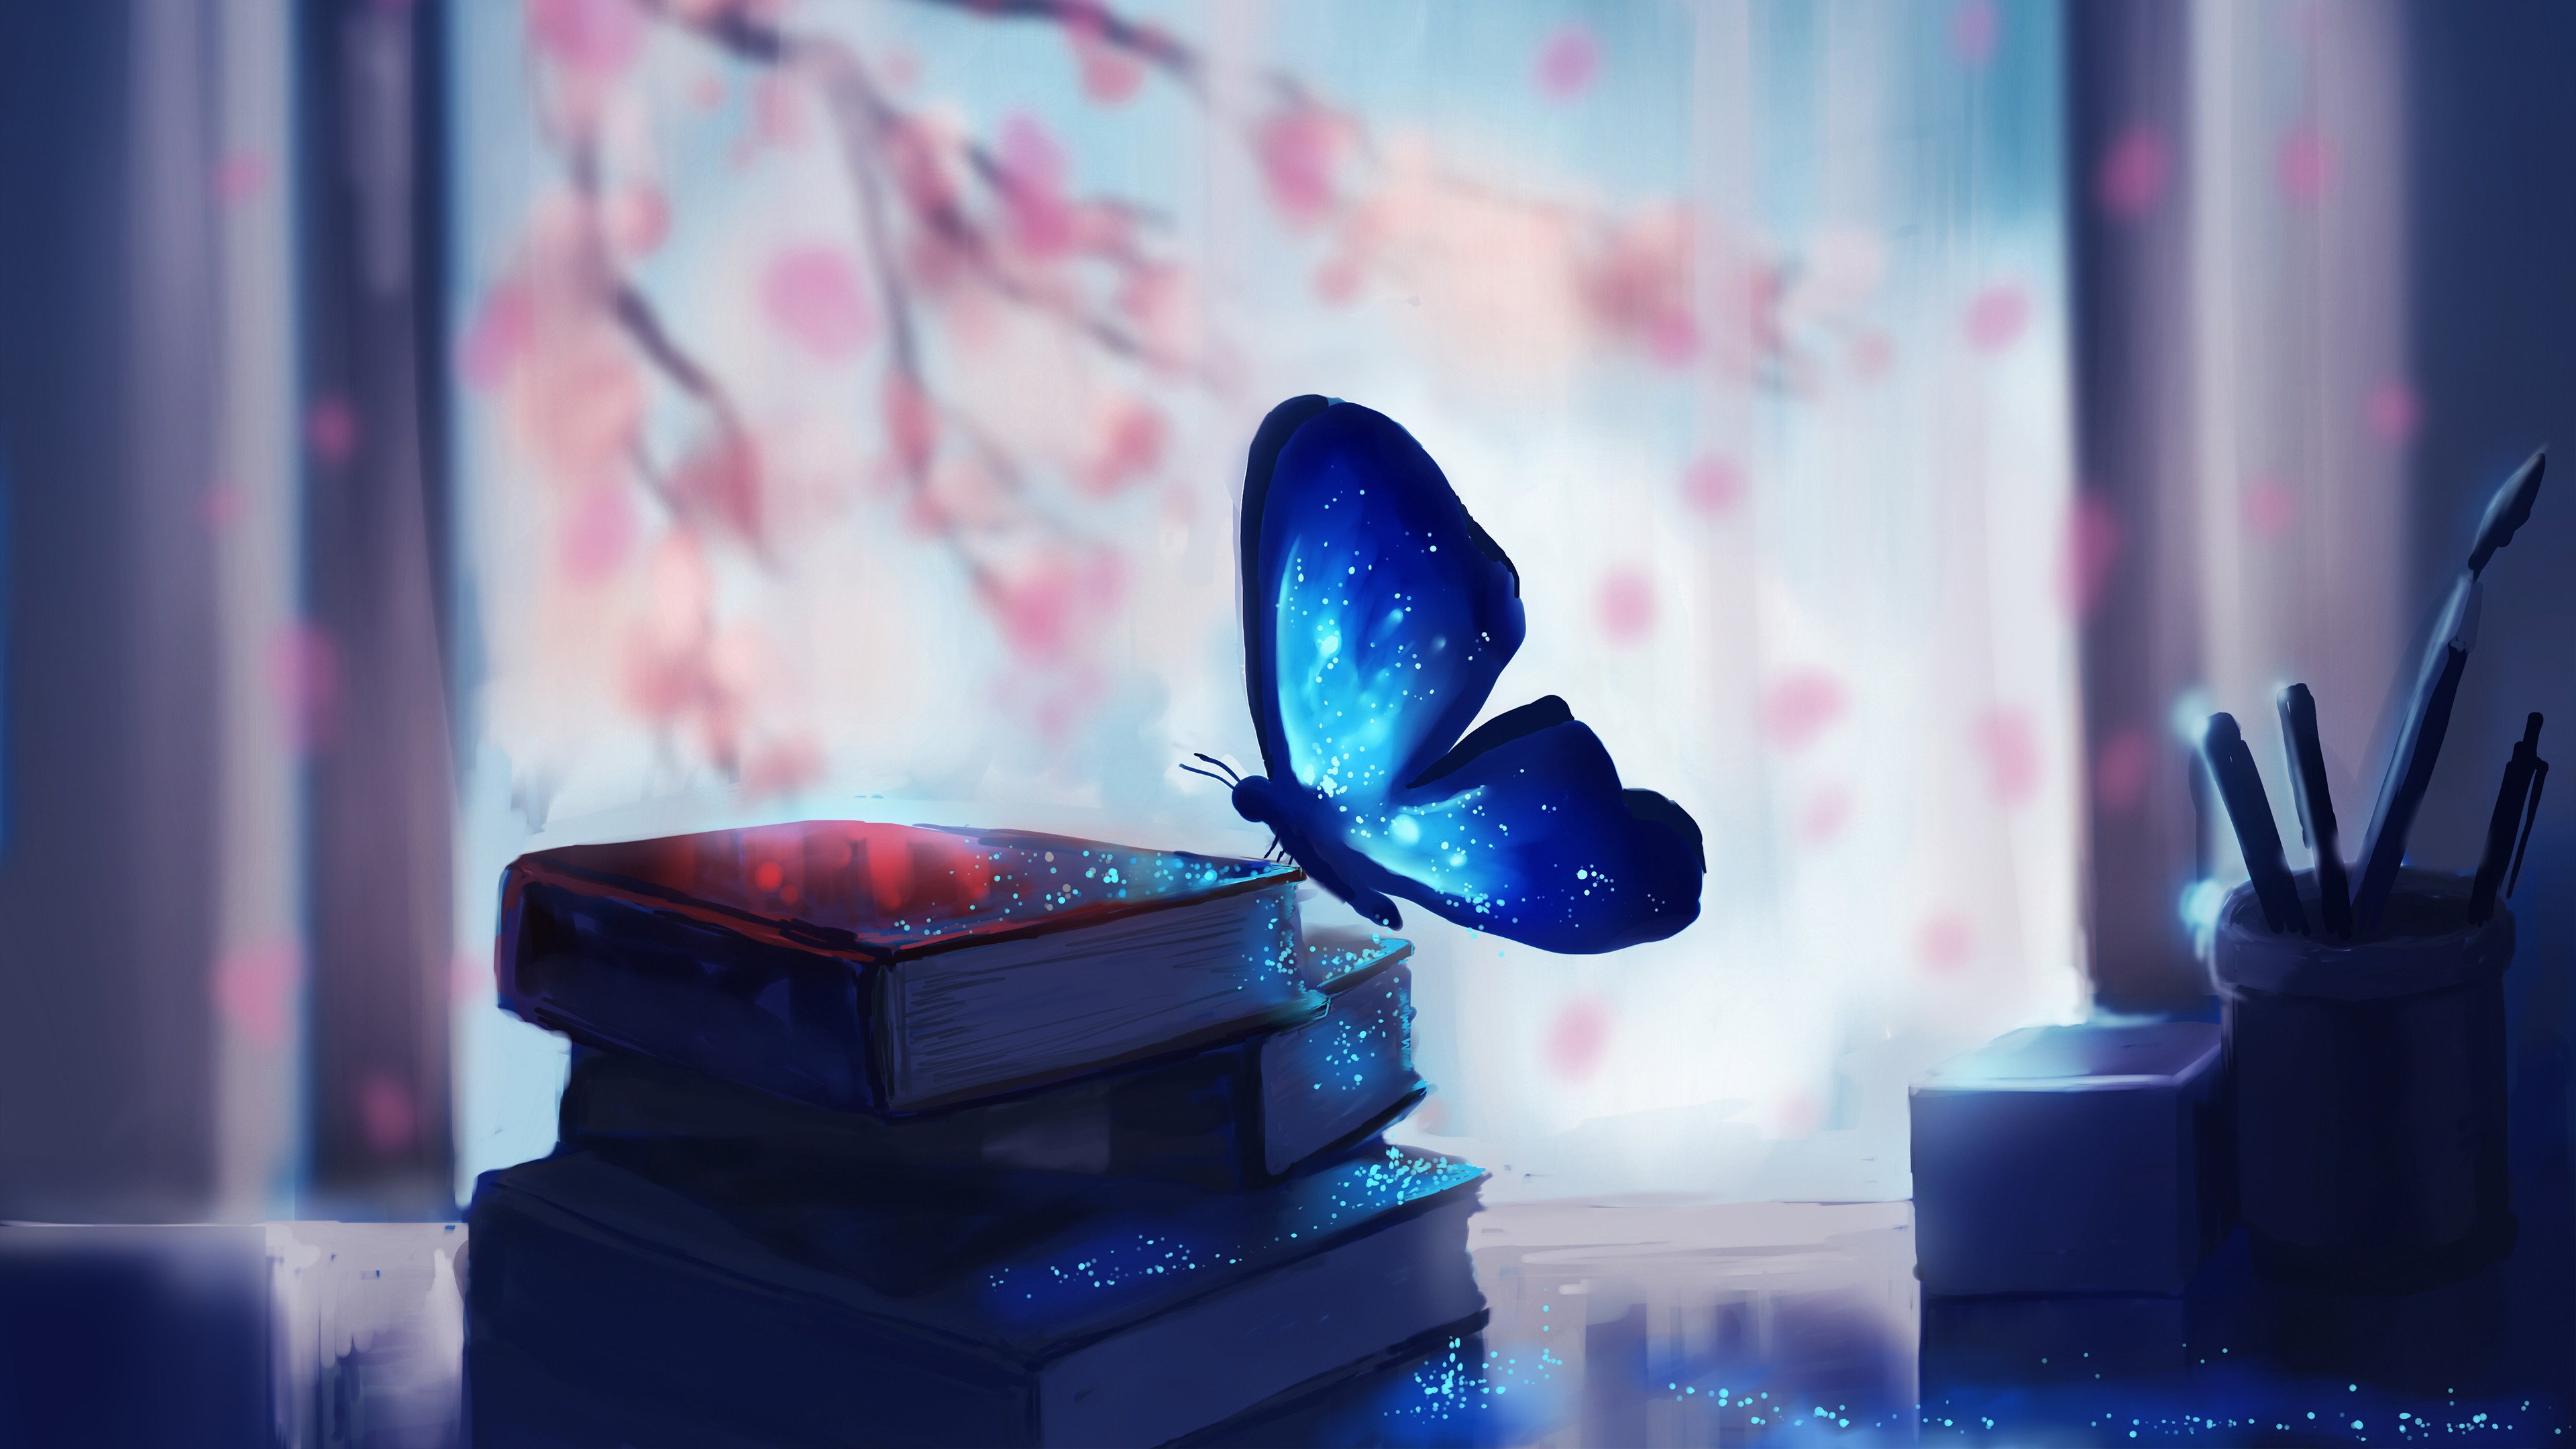 Fondos de pantalla Mariposa azul